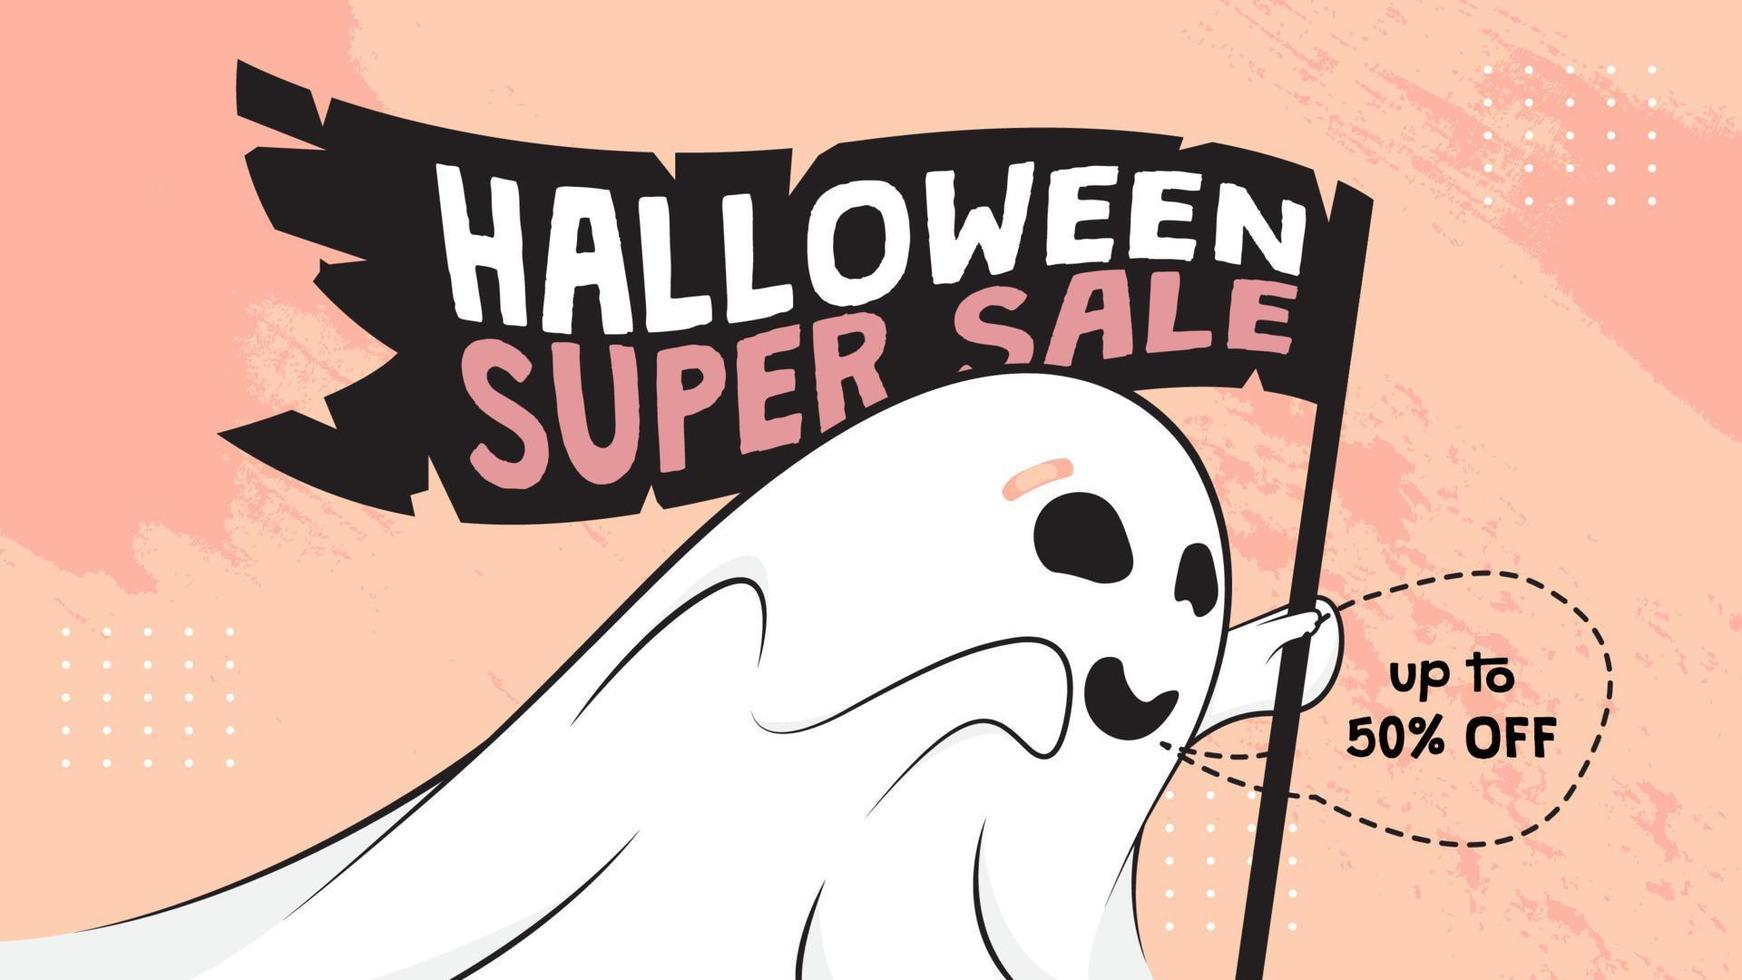 modelo de vetor de design de banner de promoção de vendas de halloween